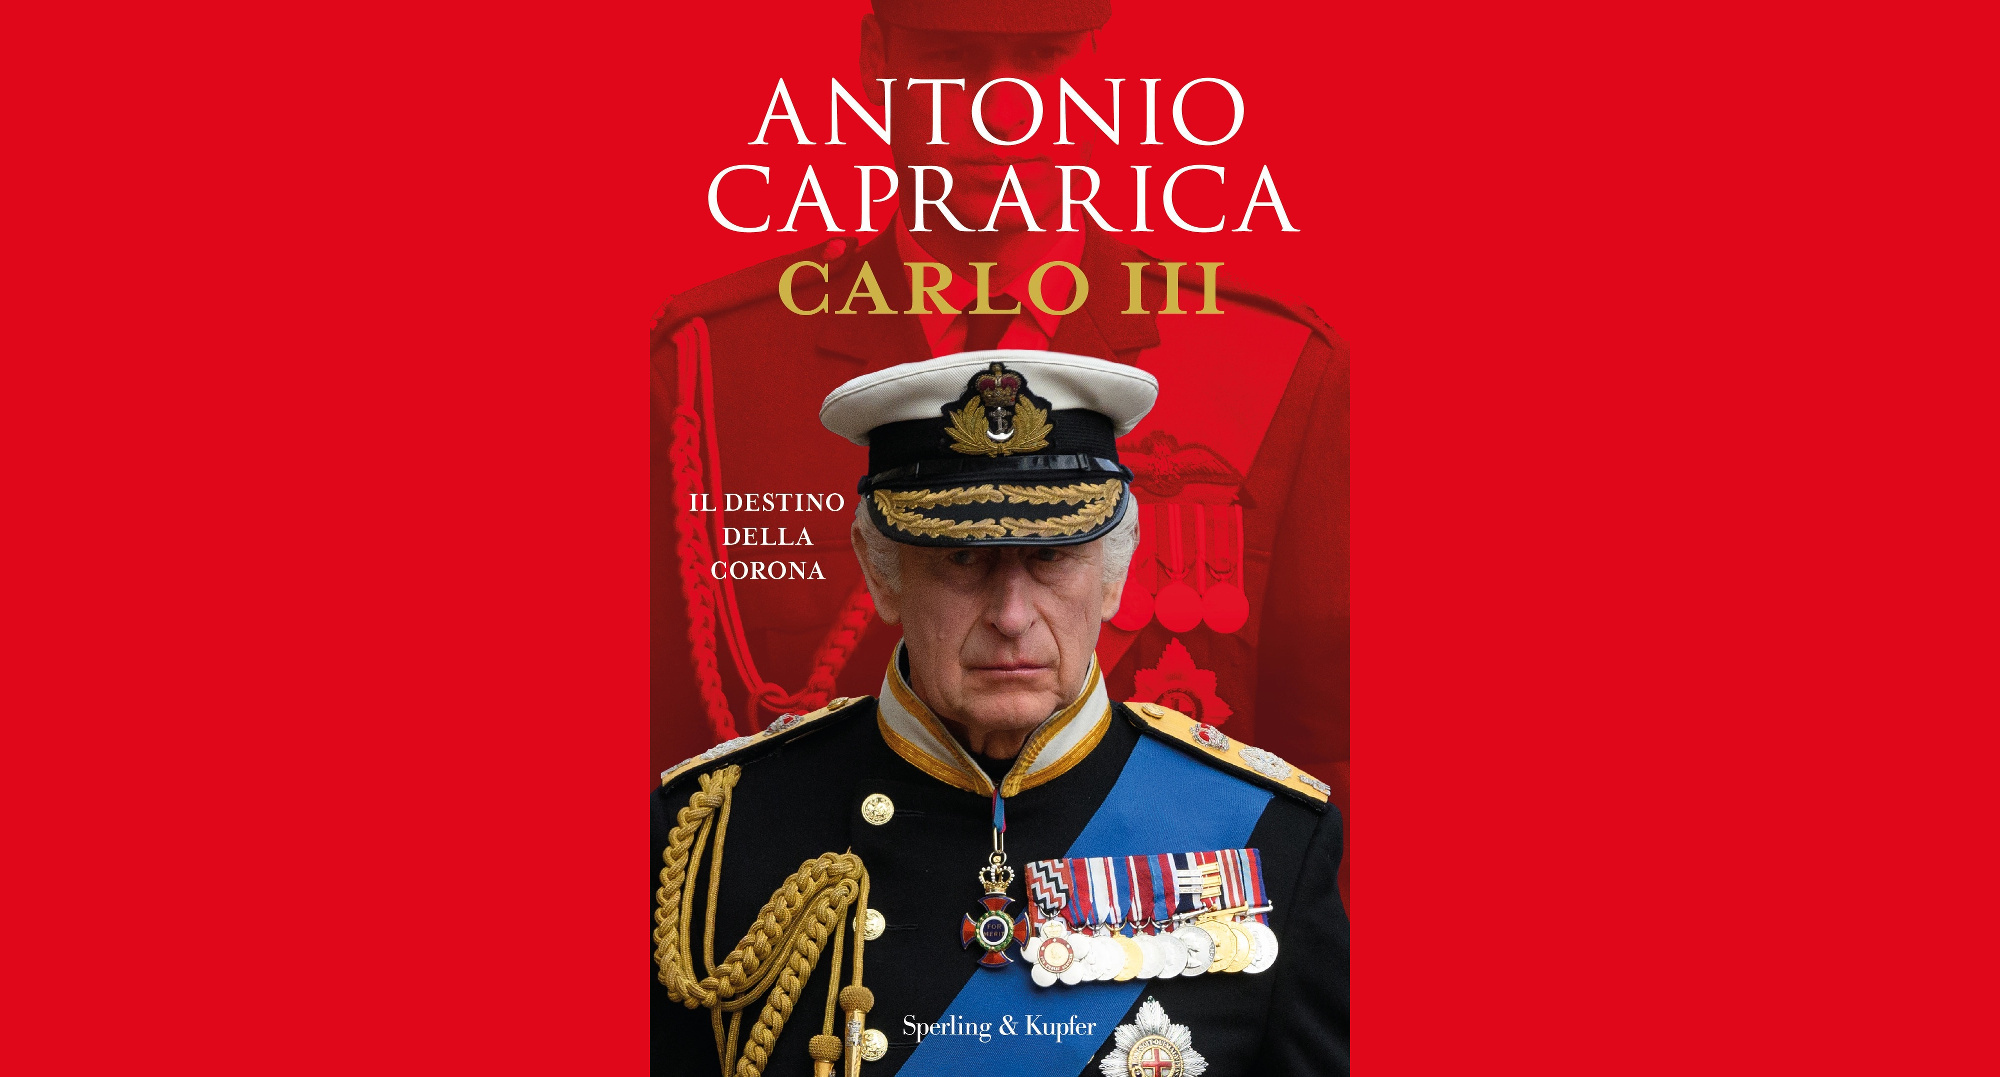 CARLO III. Il destino della corona ( Sperling & Kupfer pagg. 336 euro 19,90). Antonio Caprarica torna in libreria con un nuovo libro dedicato al nuovo monarca britannico.